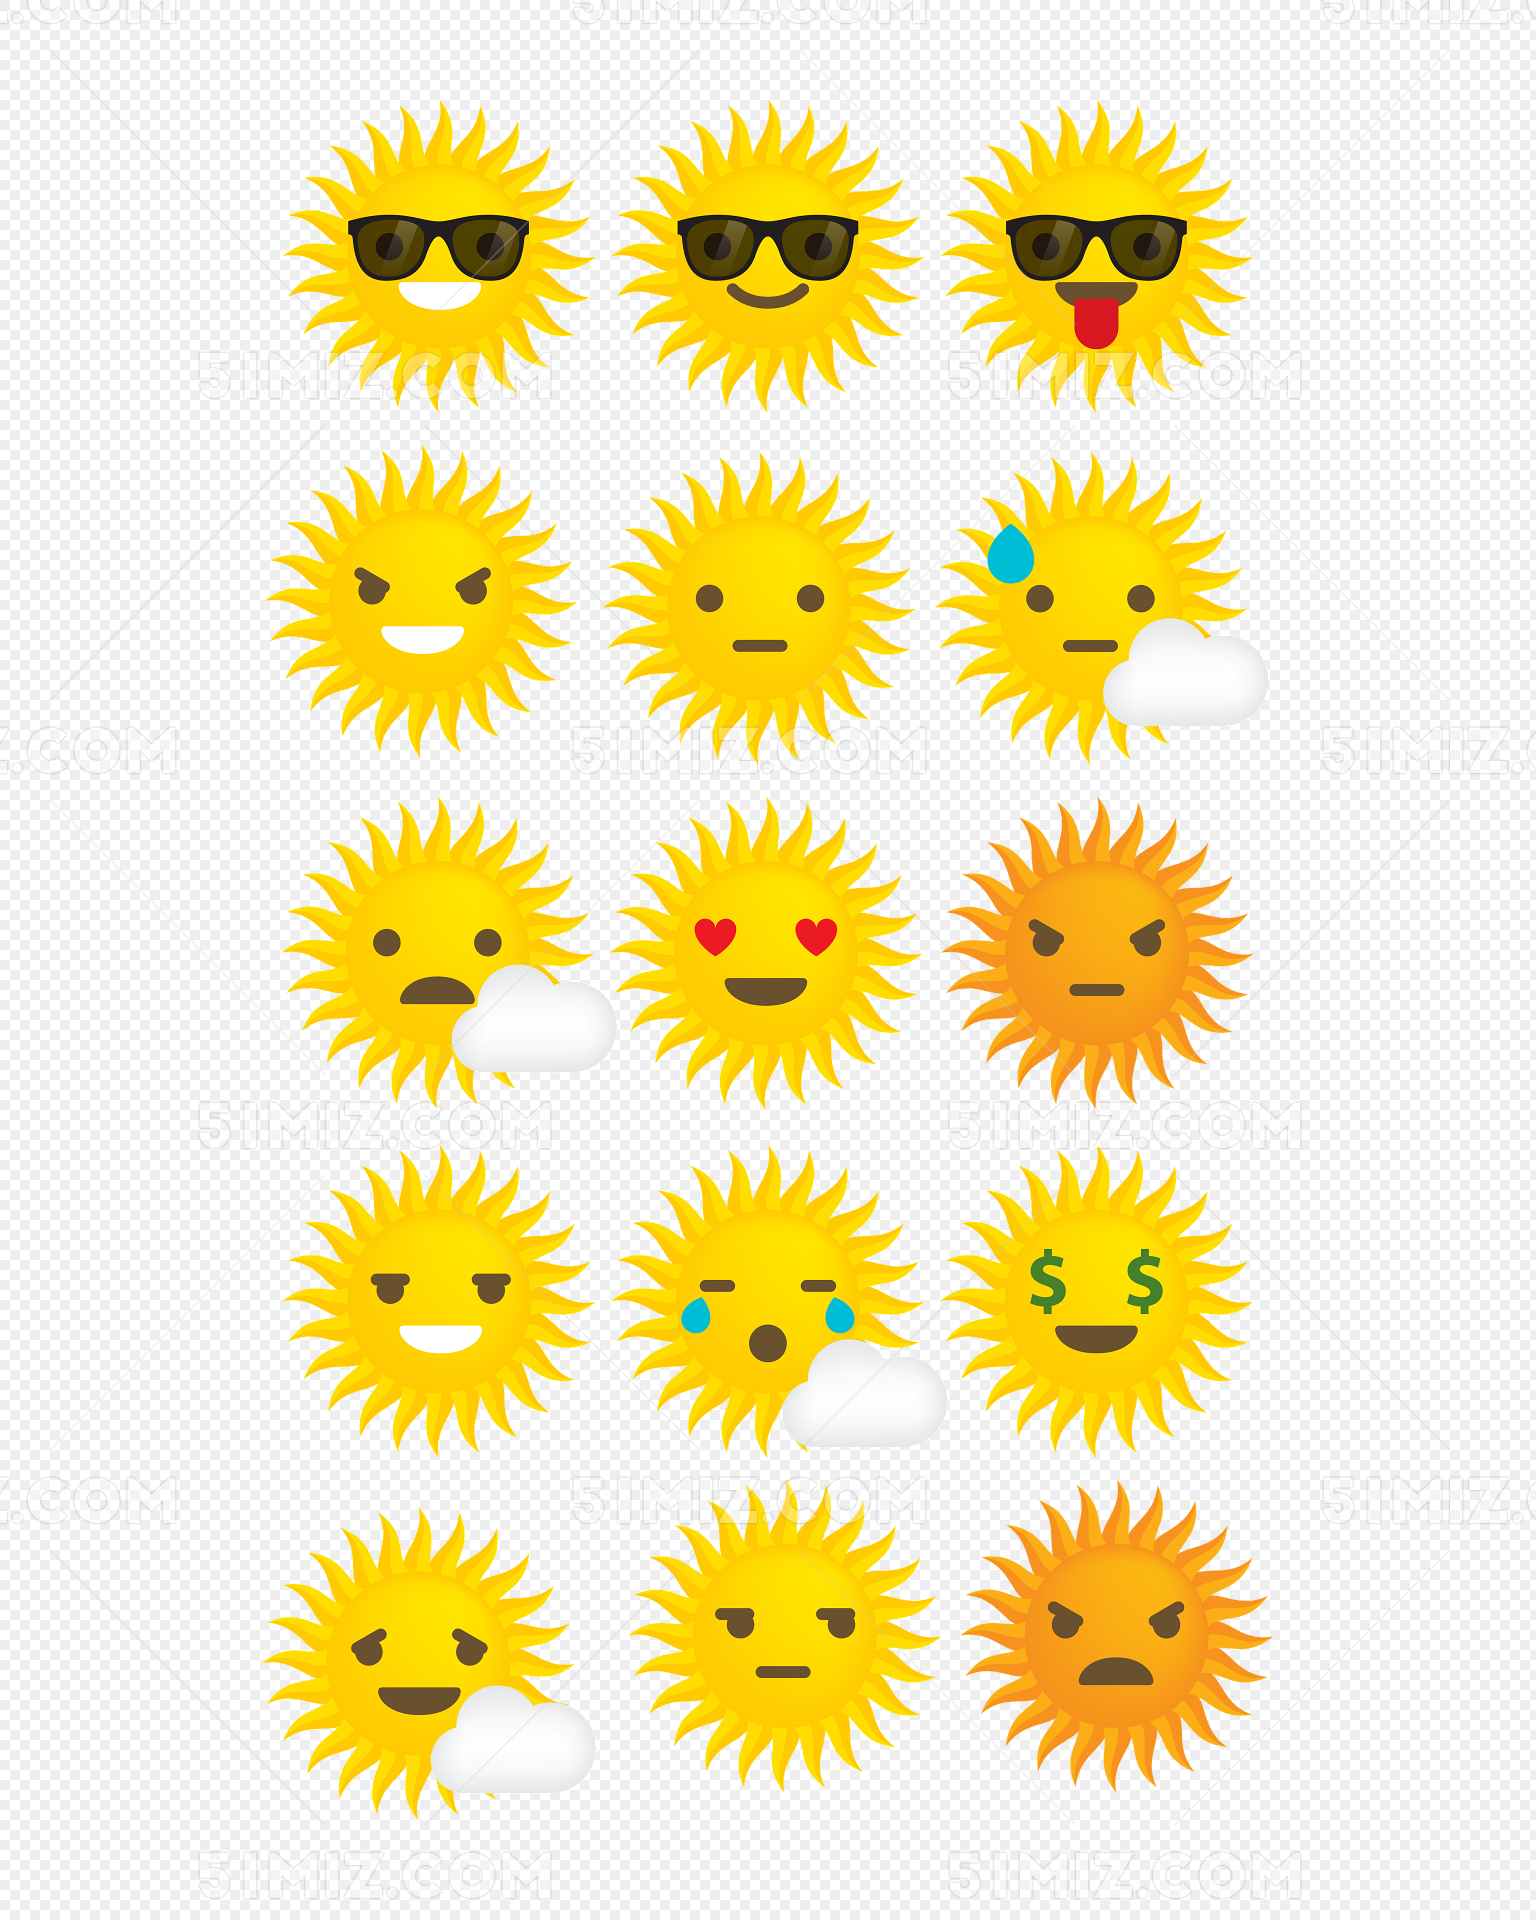 可爱太阳表情素材免费下载 - 觅知网